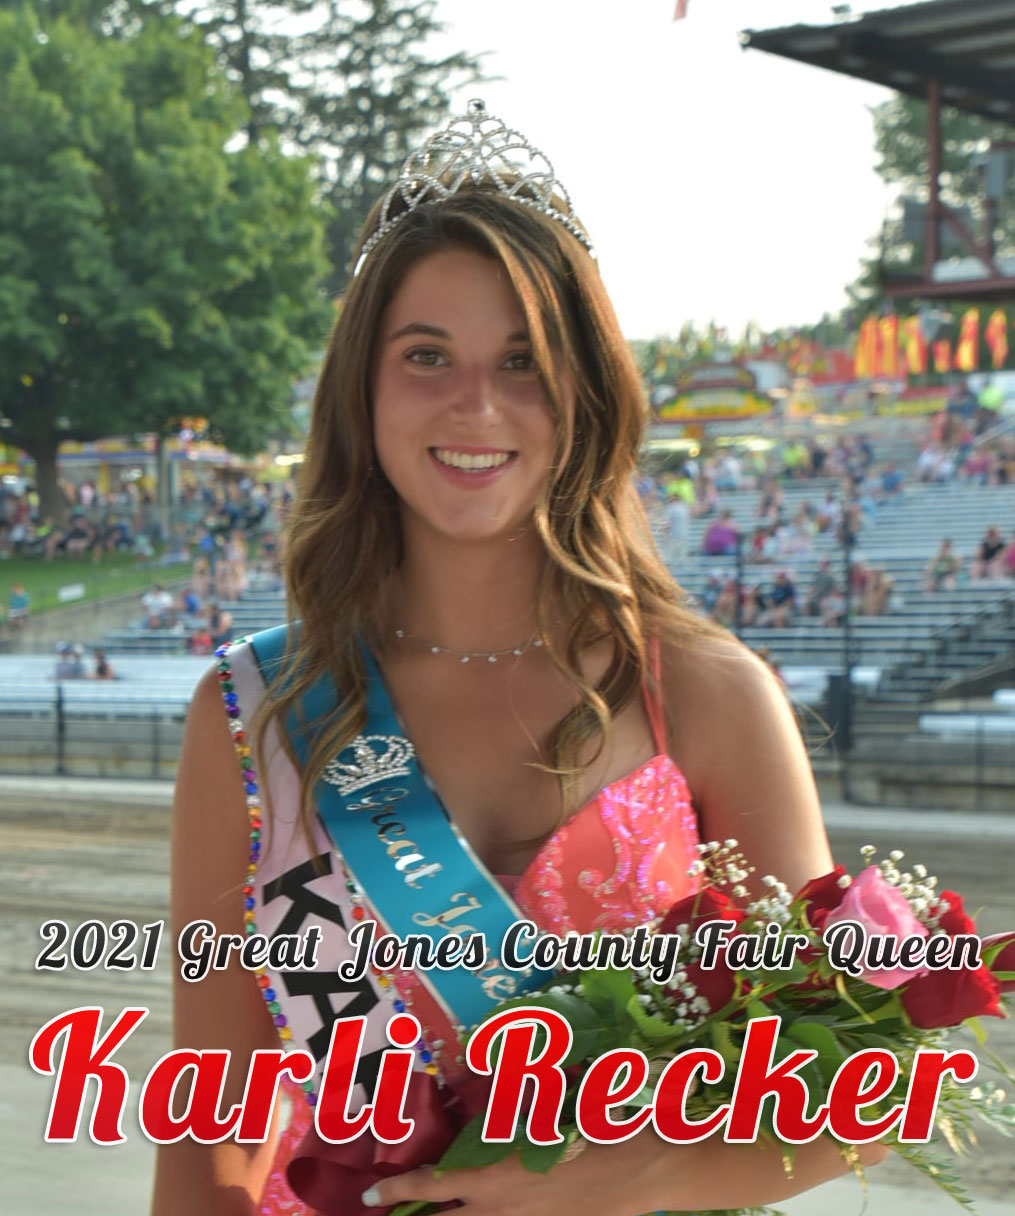 Karli Recker, 2021 Great Jones County Fair Queen!